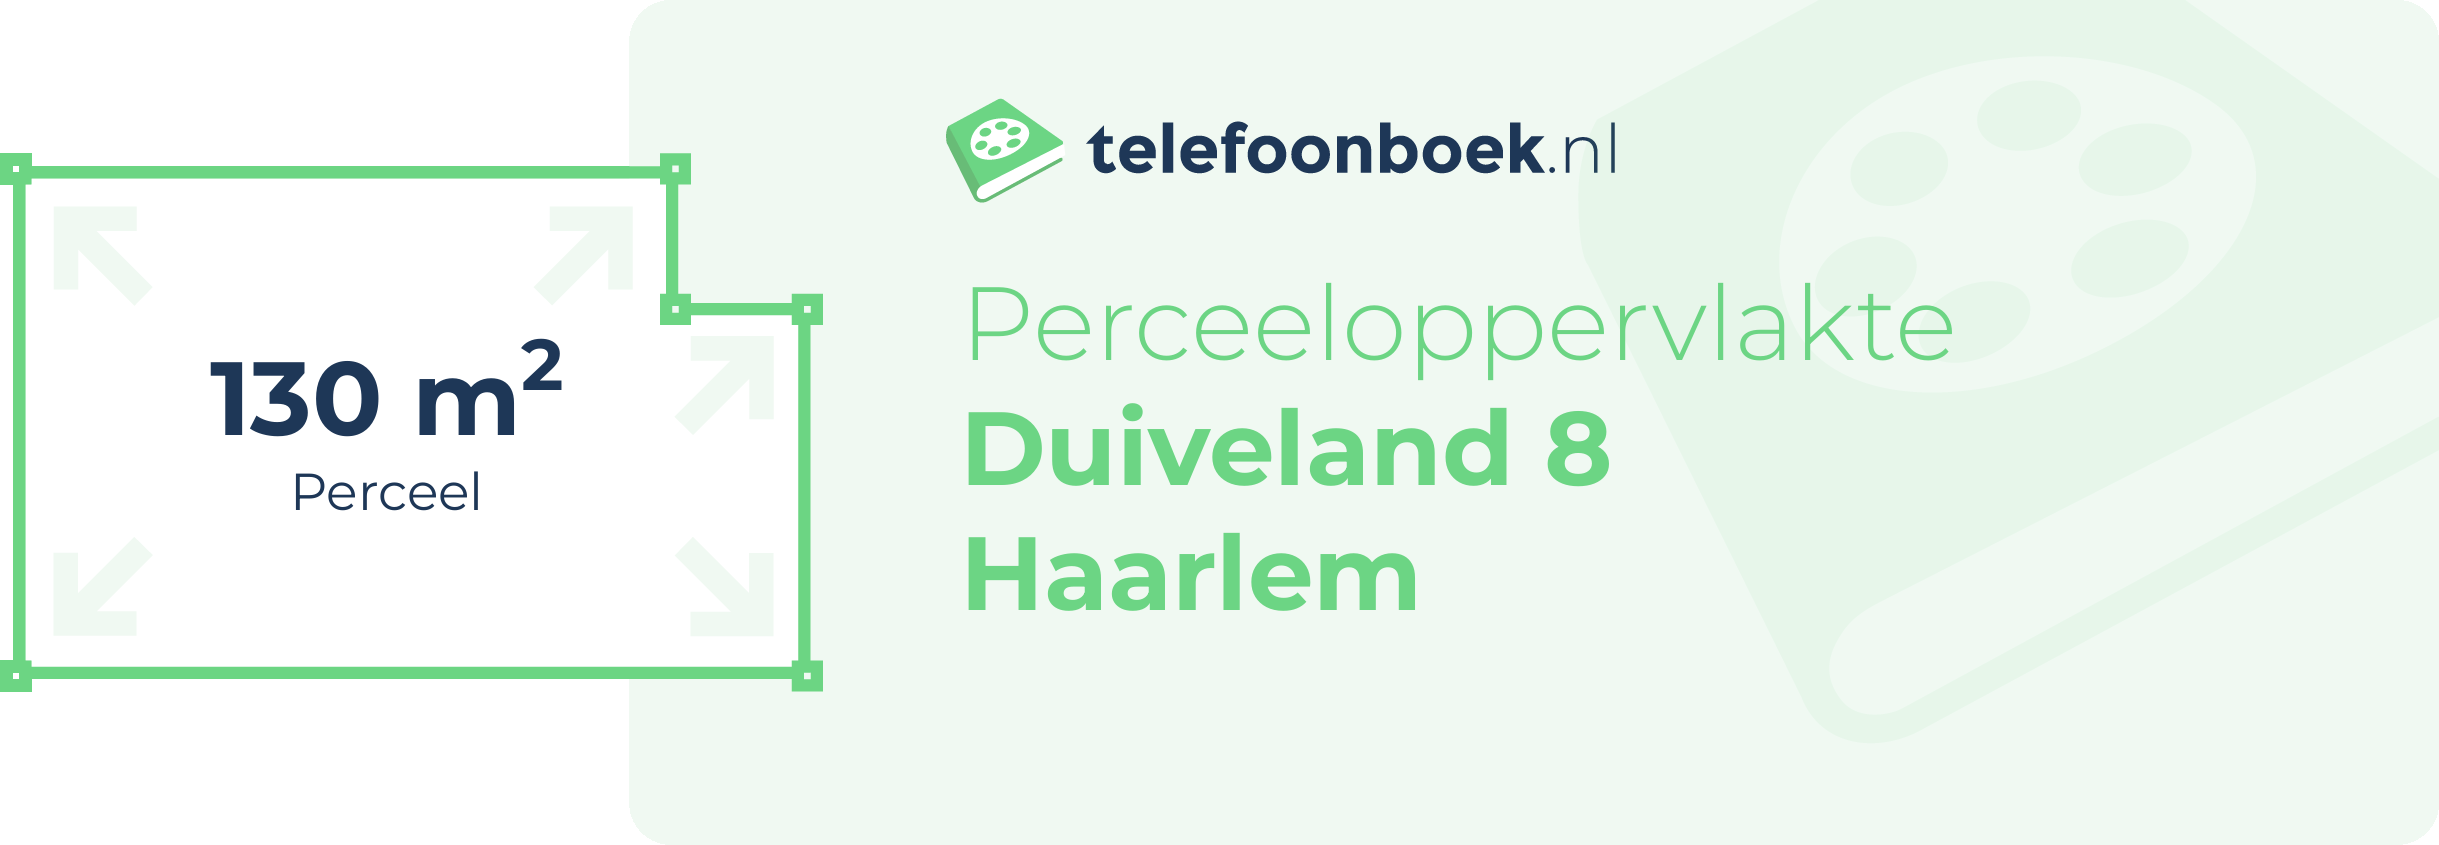 Perceeloppervlakte Duiveland 8 Haarlem